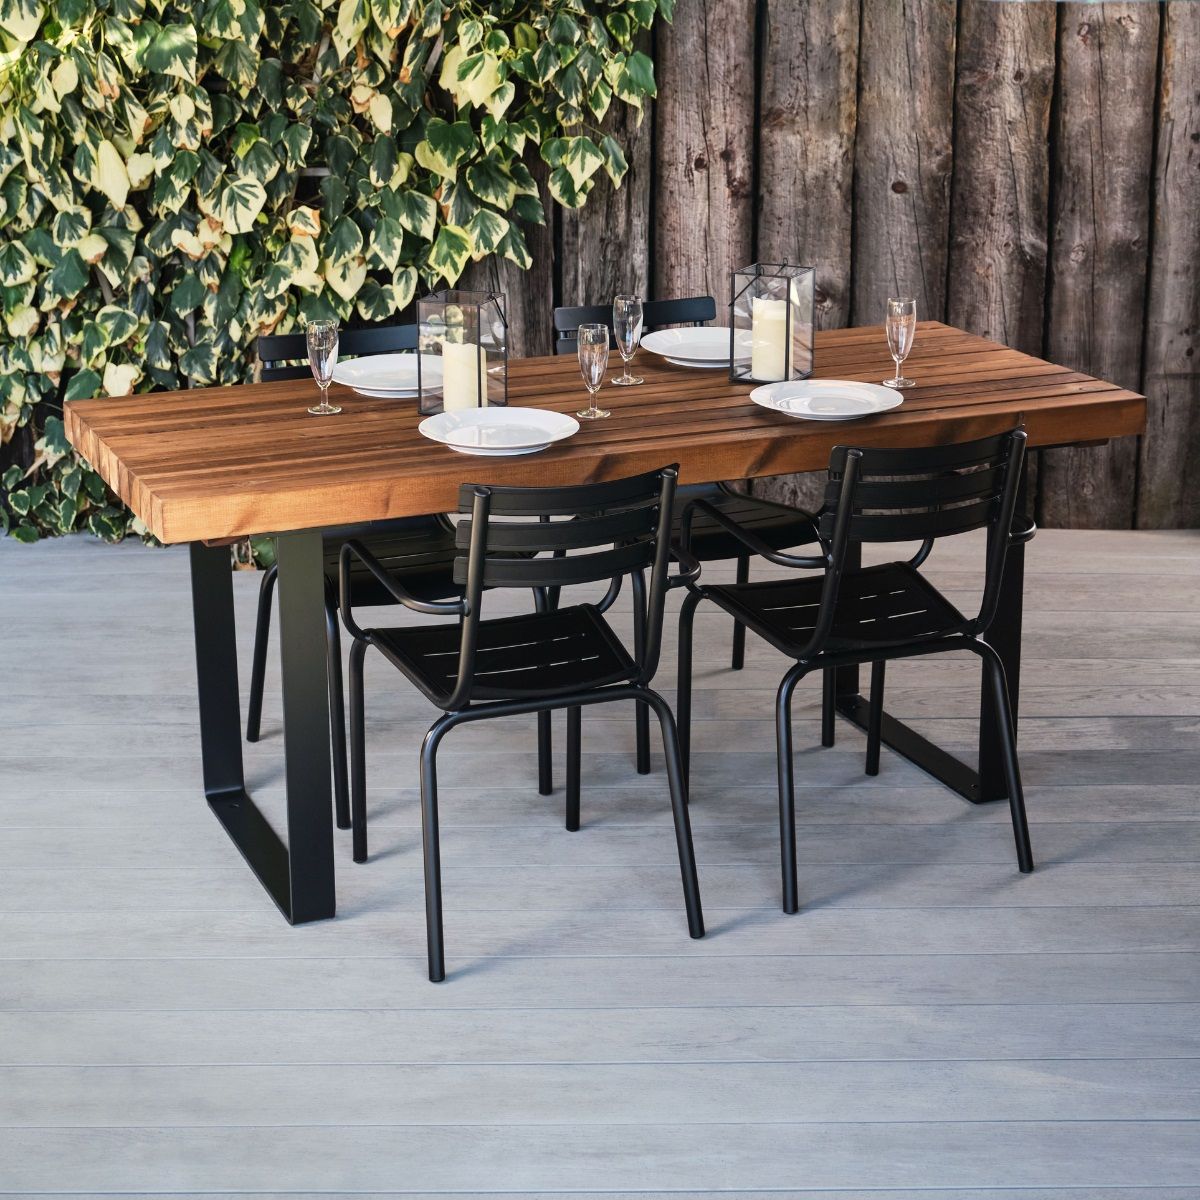 Rectangular Outdoor Table Wood & Steel | Industrial Look For Pubs & Bars Regarding Outdoor Furniture Metal Rectangular Tables (View 11 of 15)